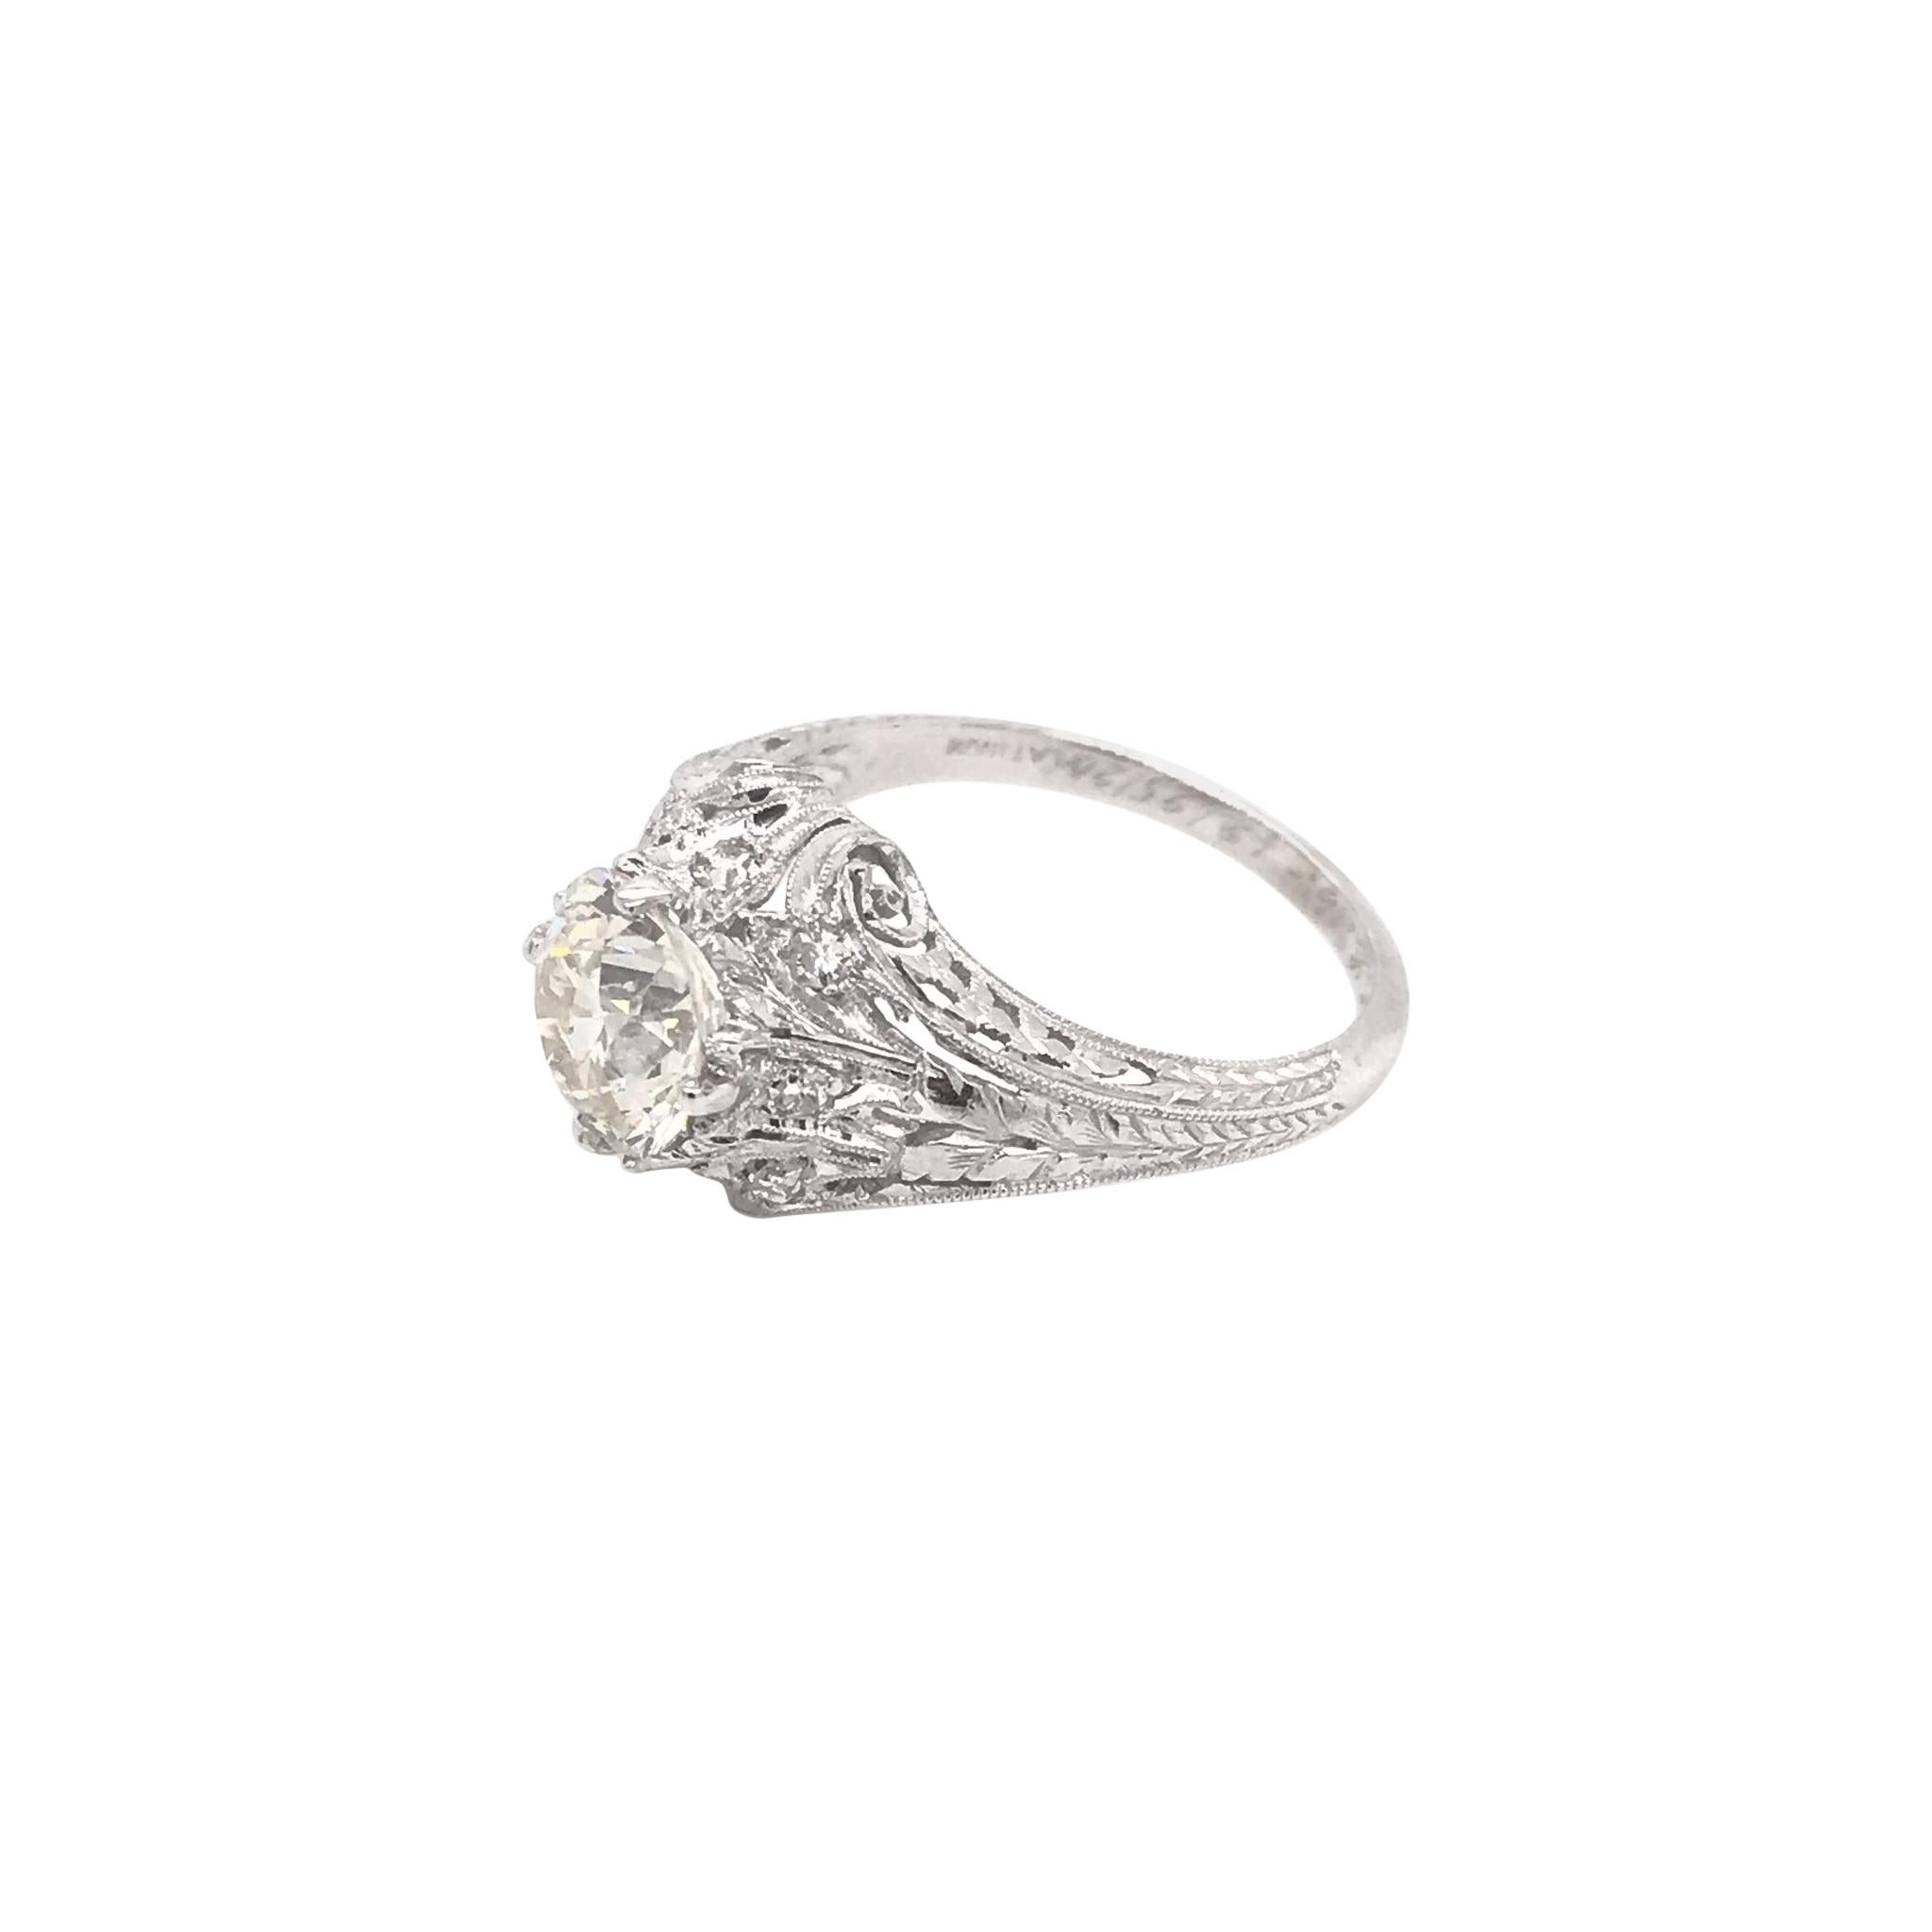 Edwardian Era 1.54 Carat Platinum Filigree Diamond Engagement Ring